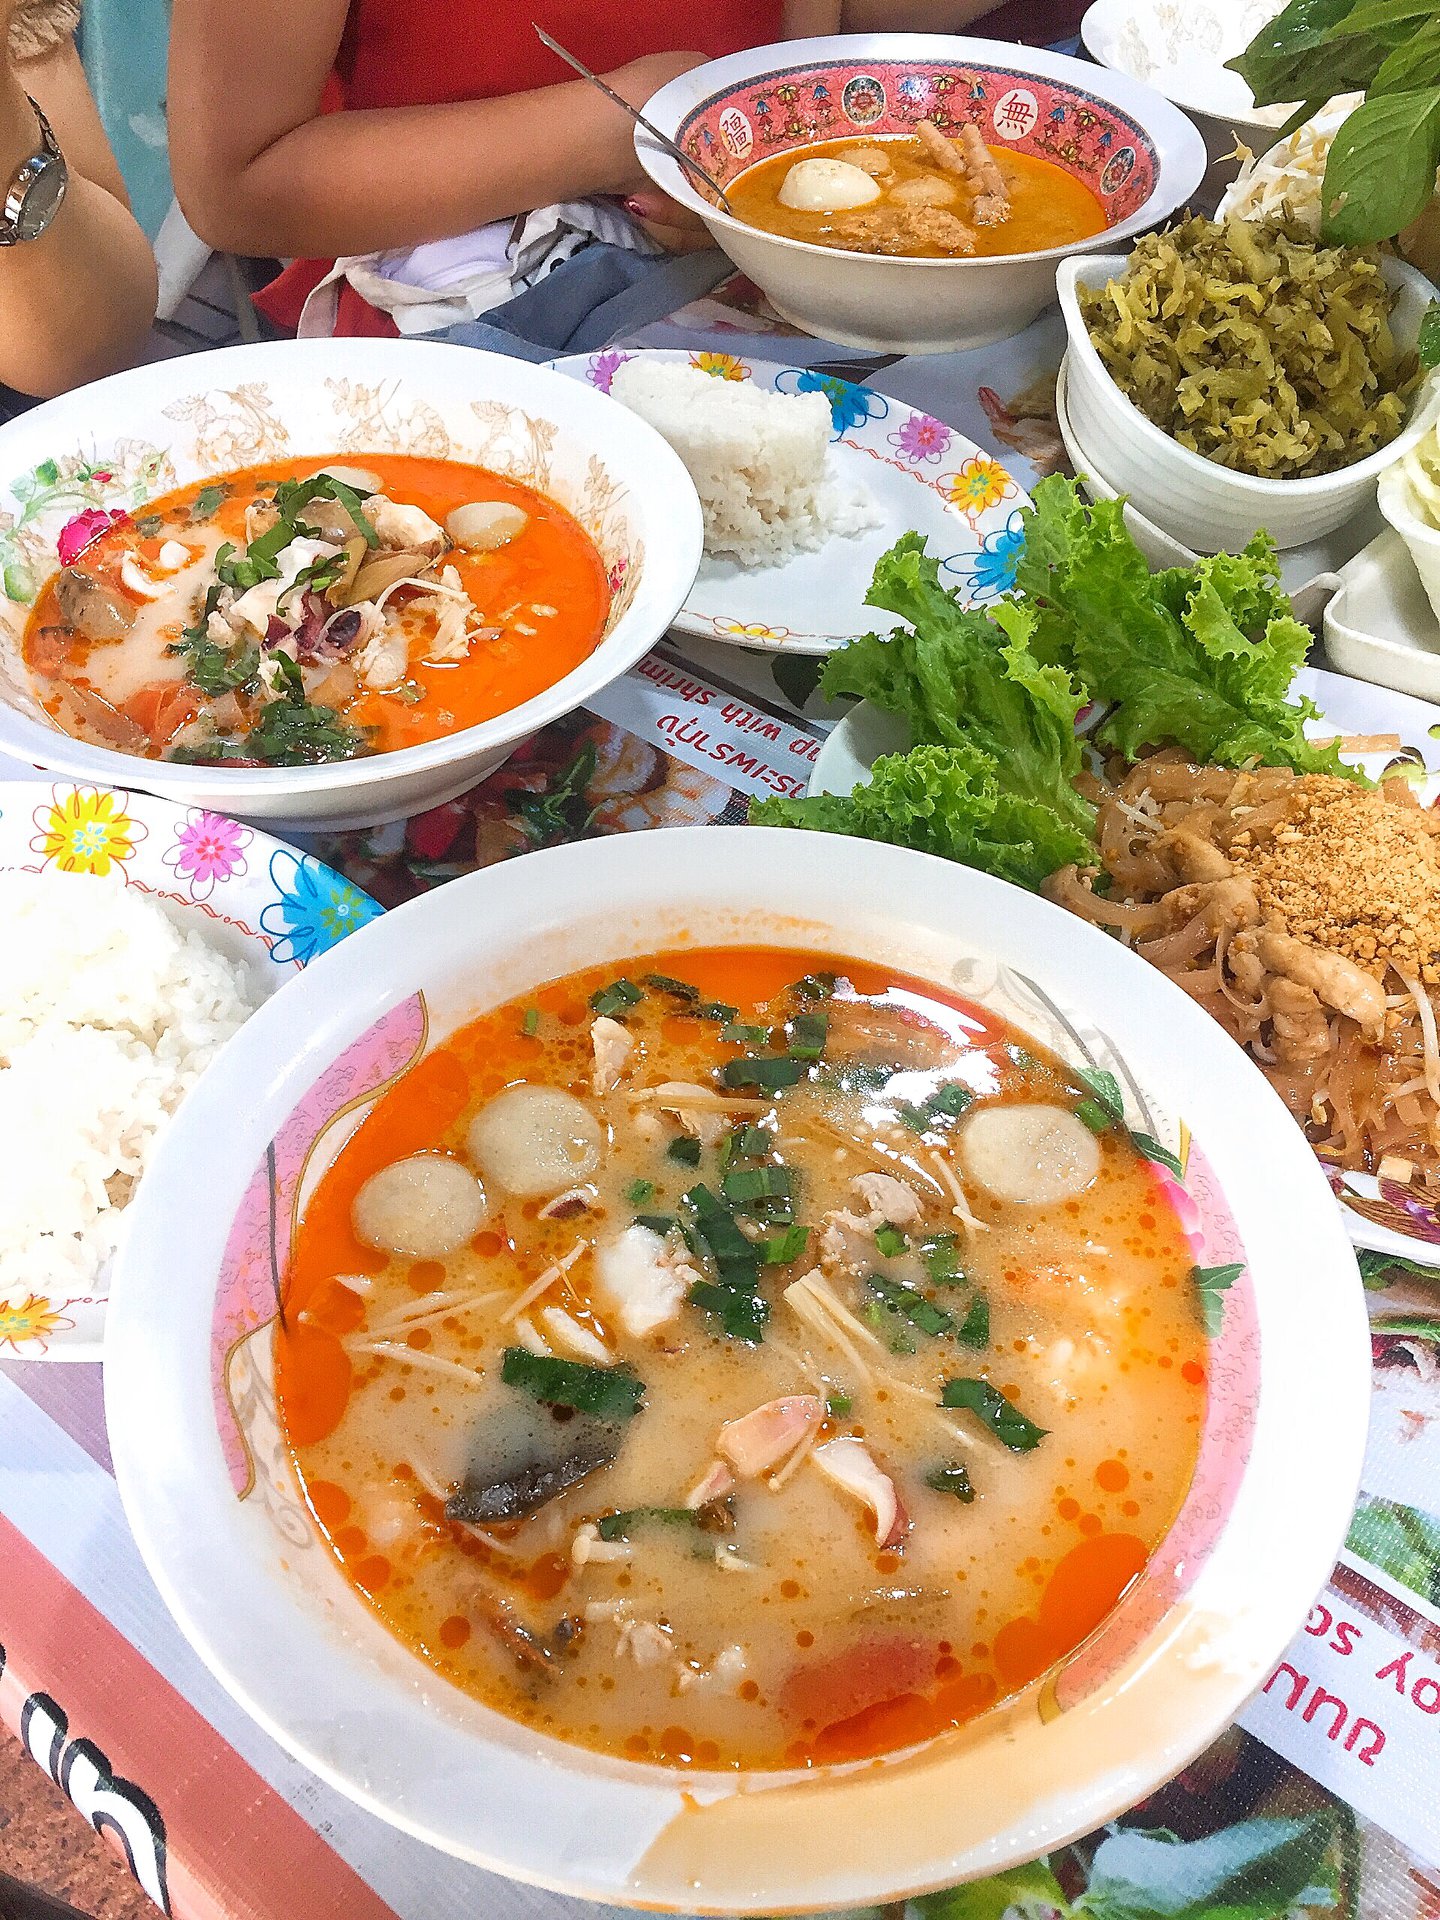 Súp chua cay, Tom yum, là một món ăn phổ biến thể hiện hương vị tuyệt vời của đất nước Thái Lan.